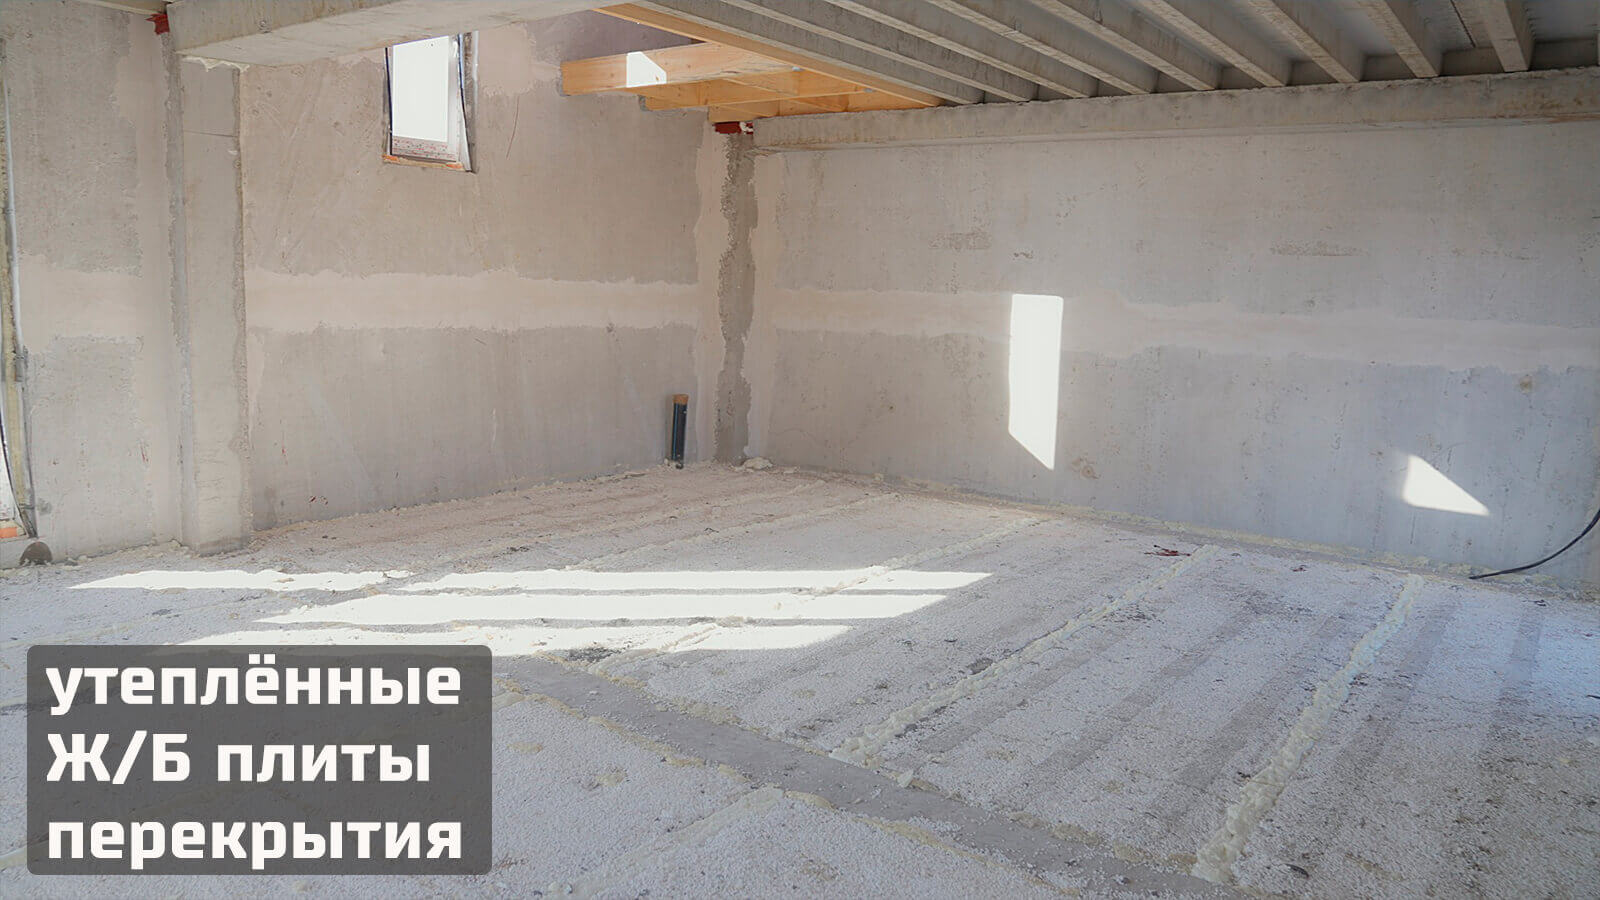 Строительство домов в Московской области по доступной цене!